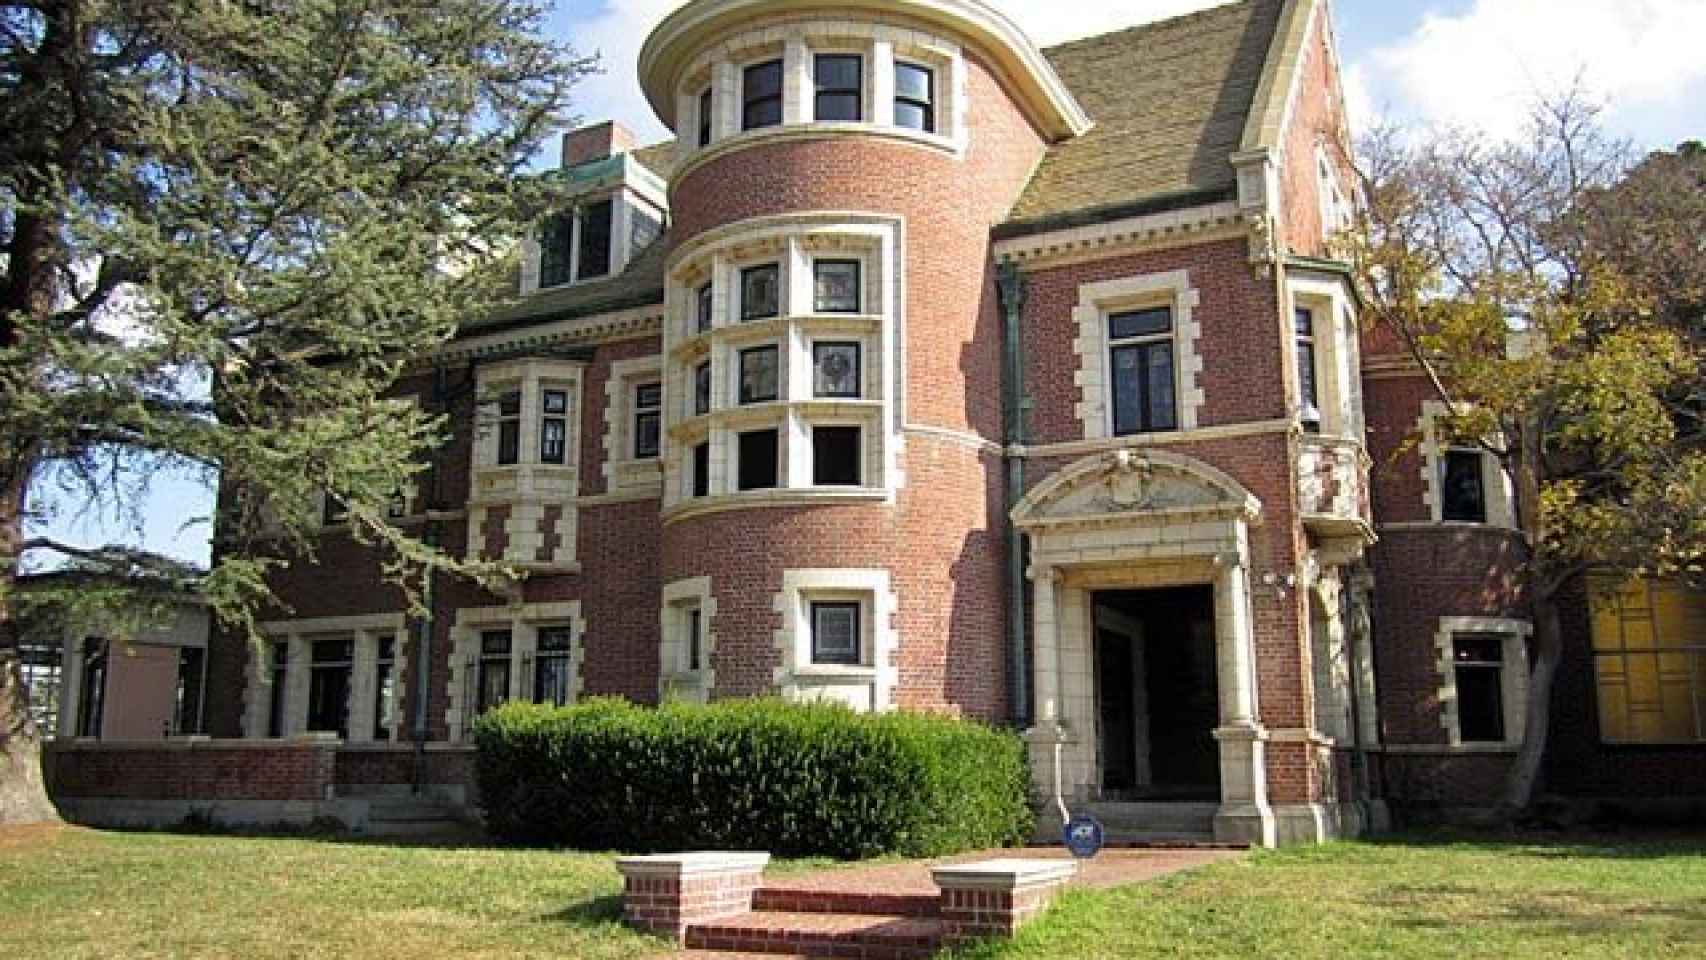 ¿Alquilarías la casa de ‘American Horror Story’?